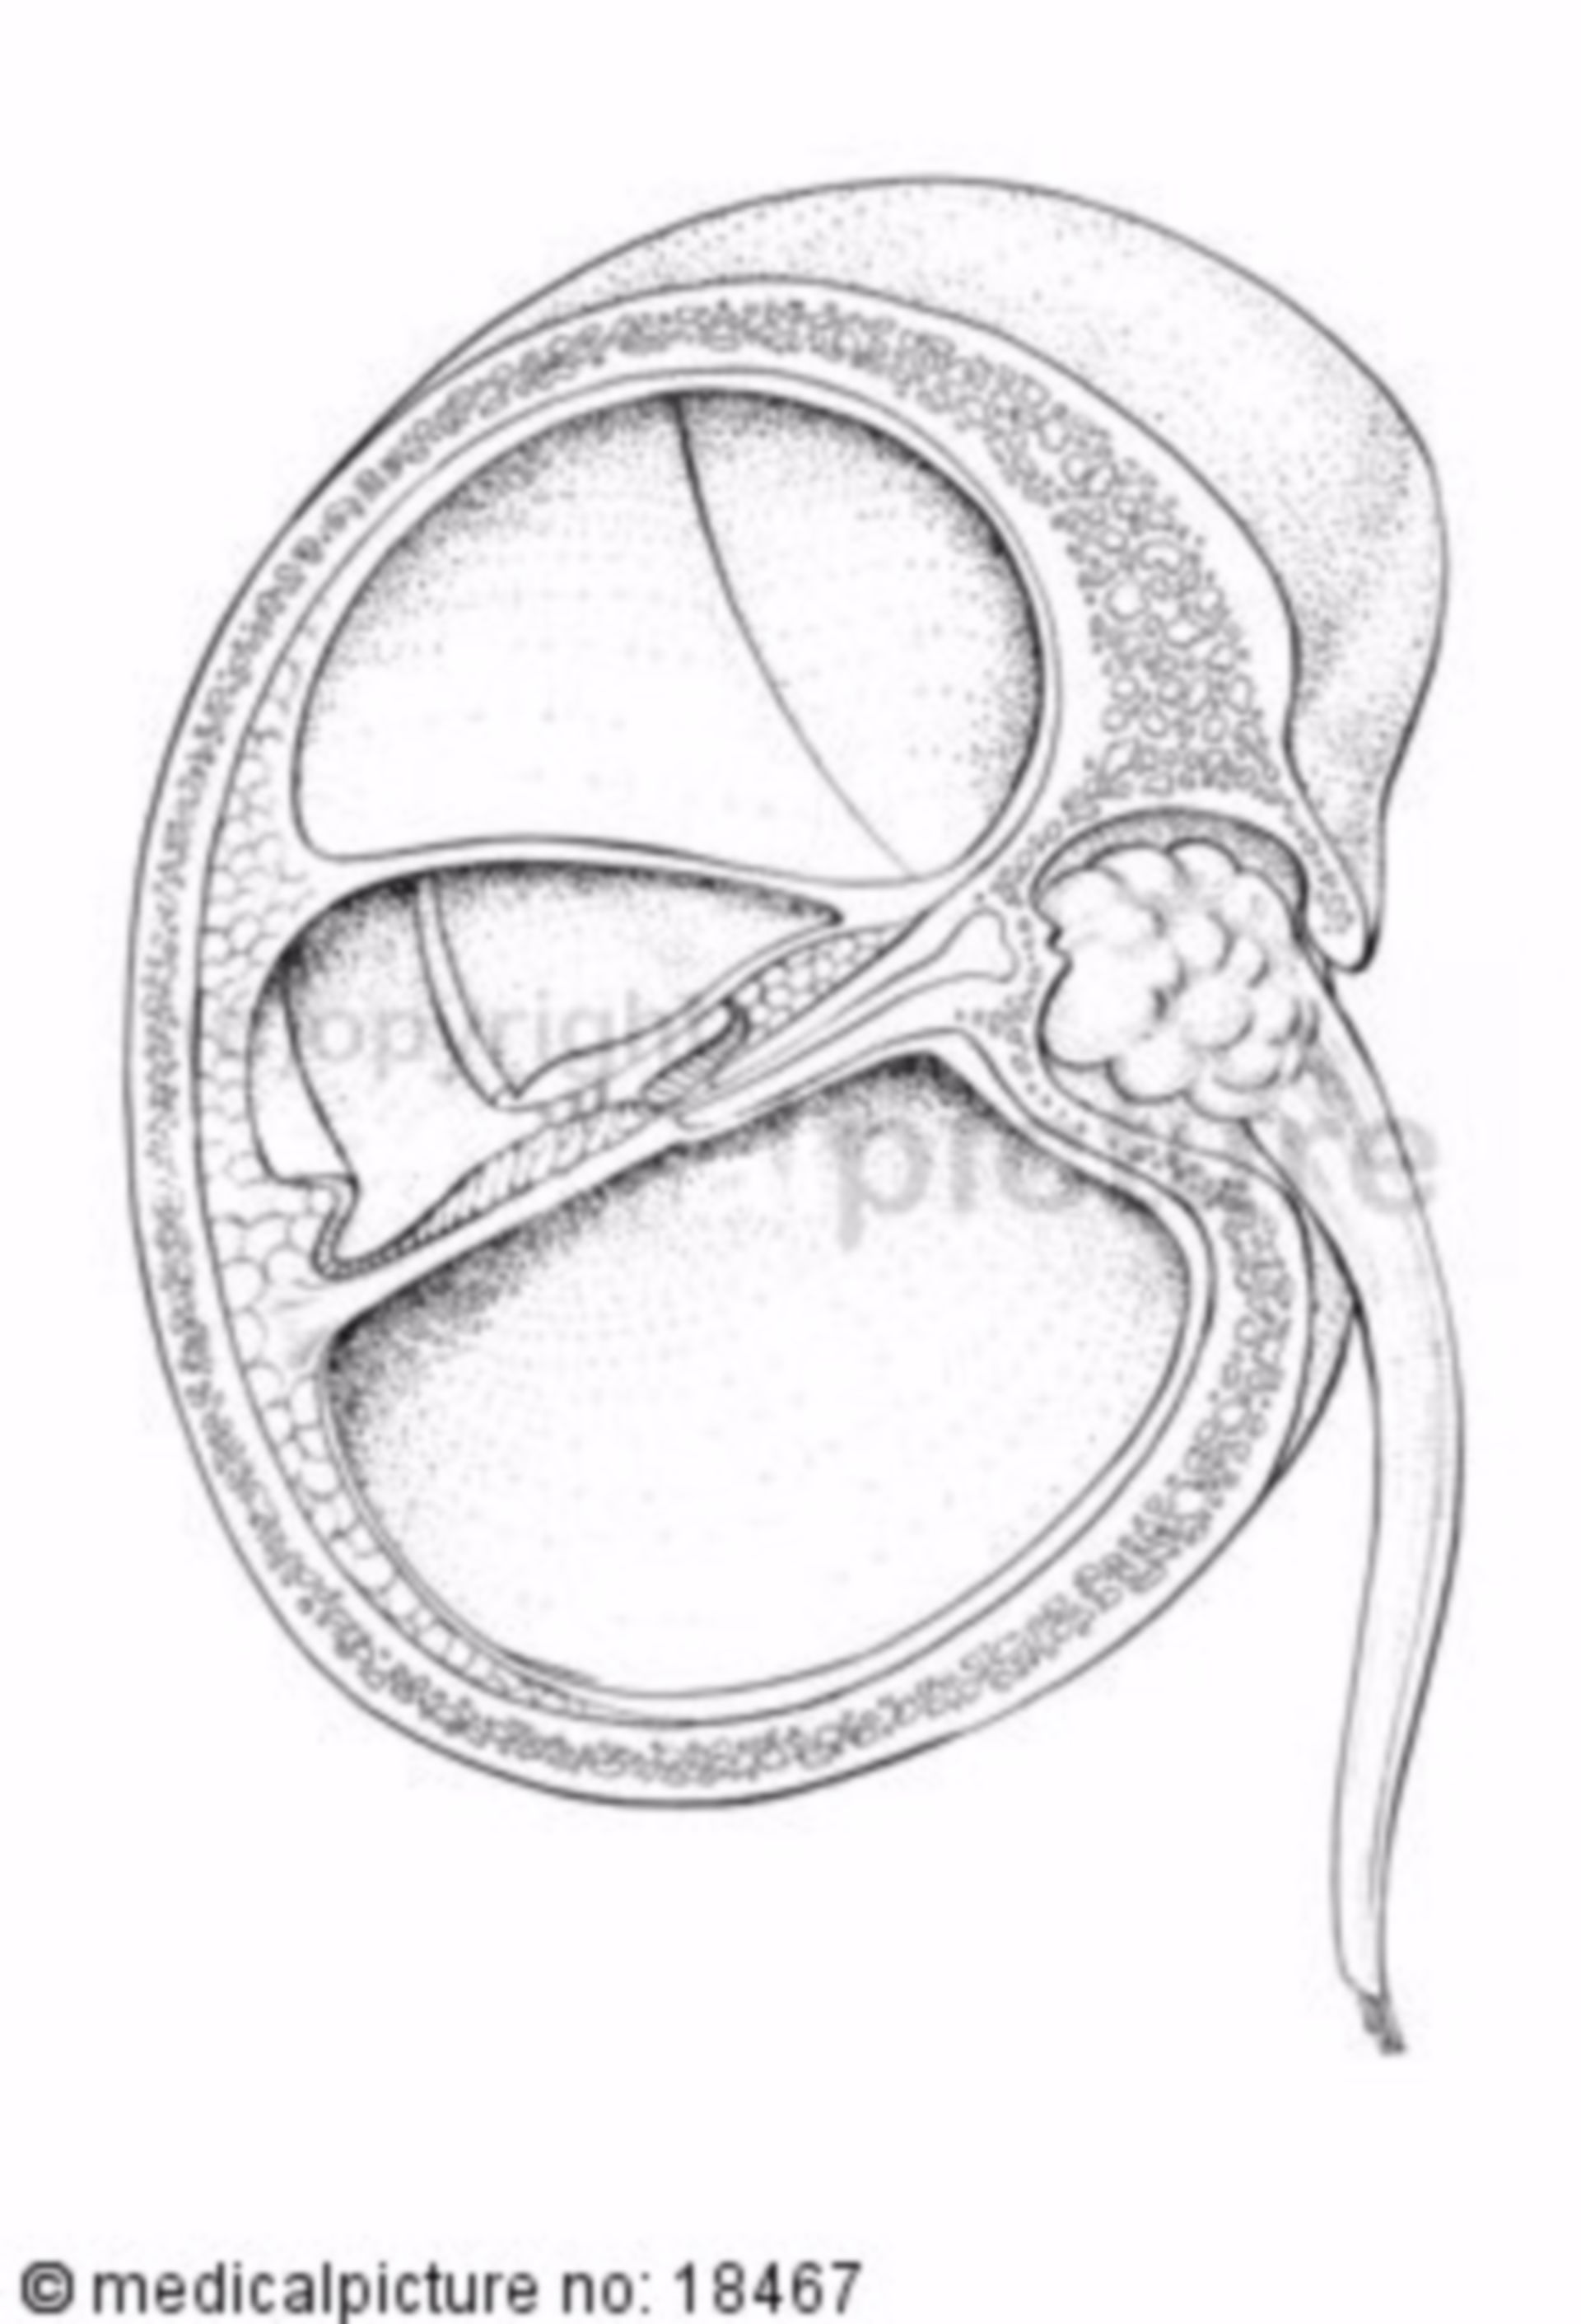  Innenohr, Corti - organ, organon spirale 
